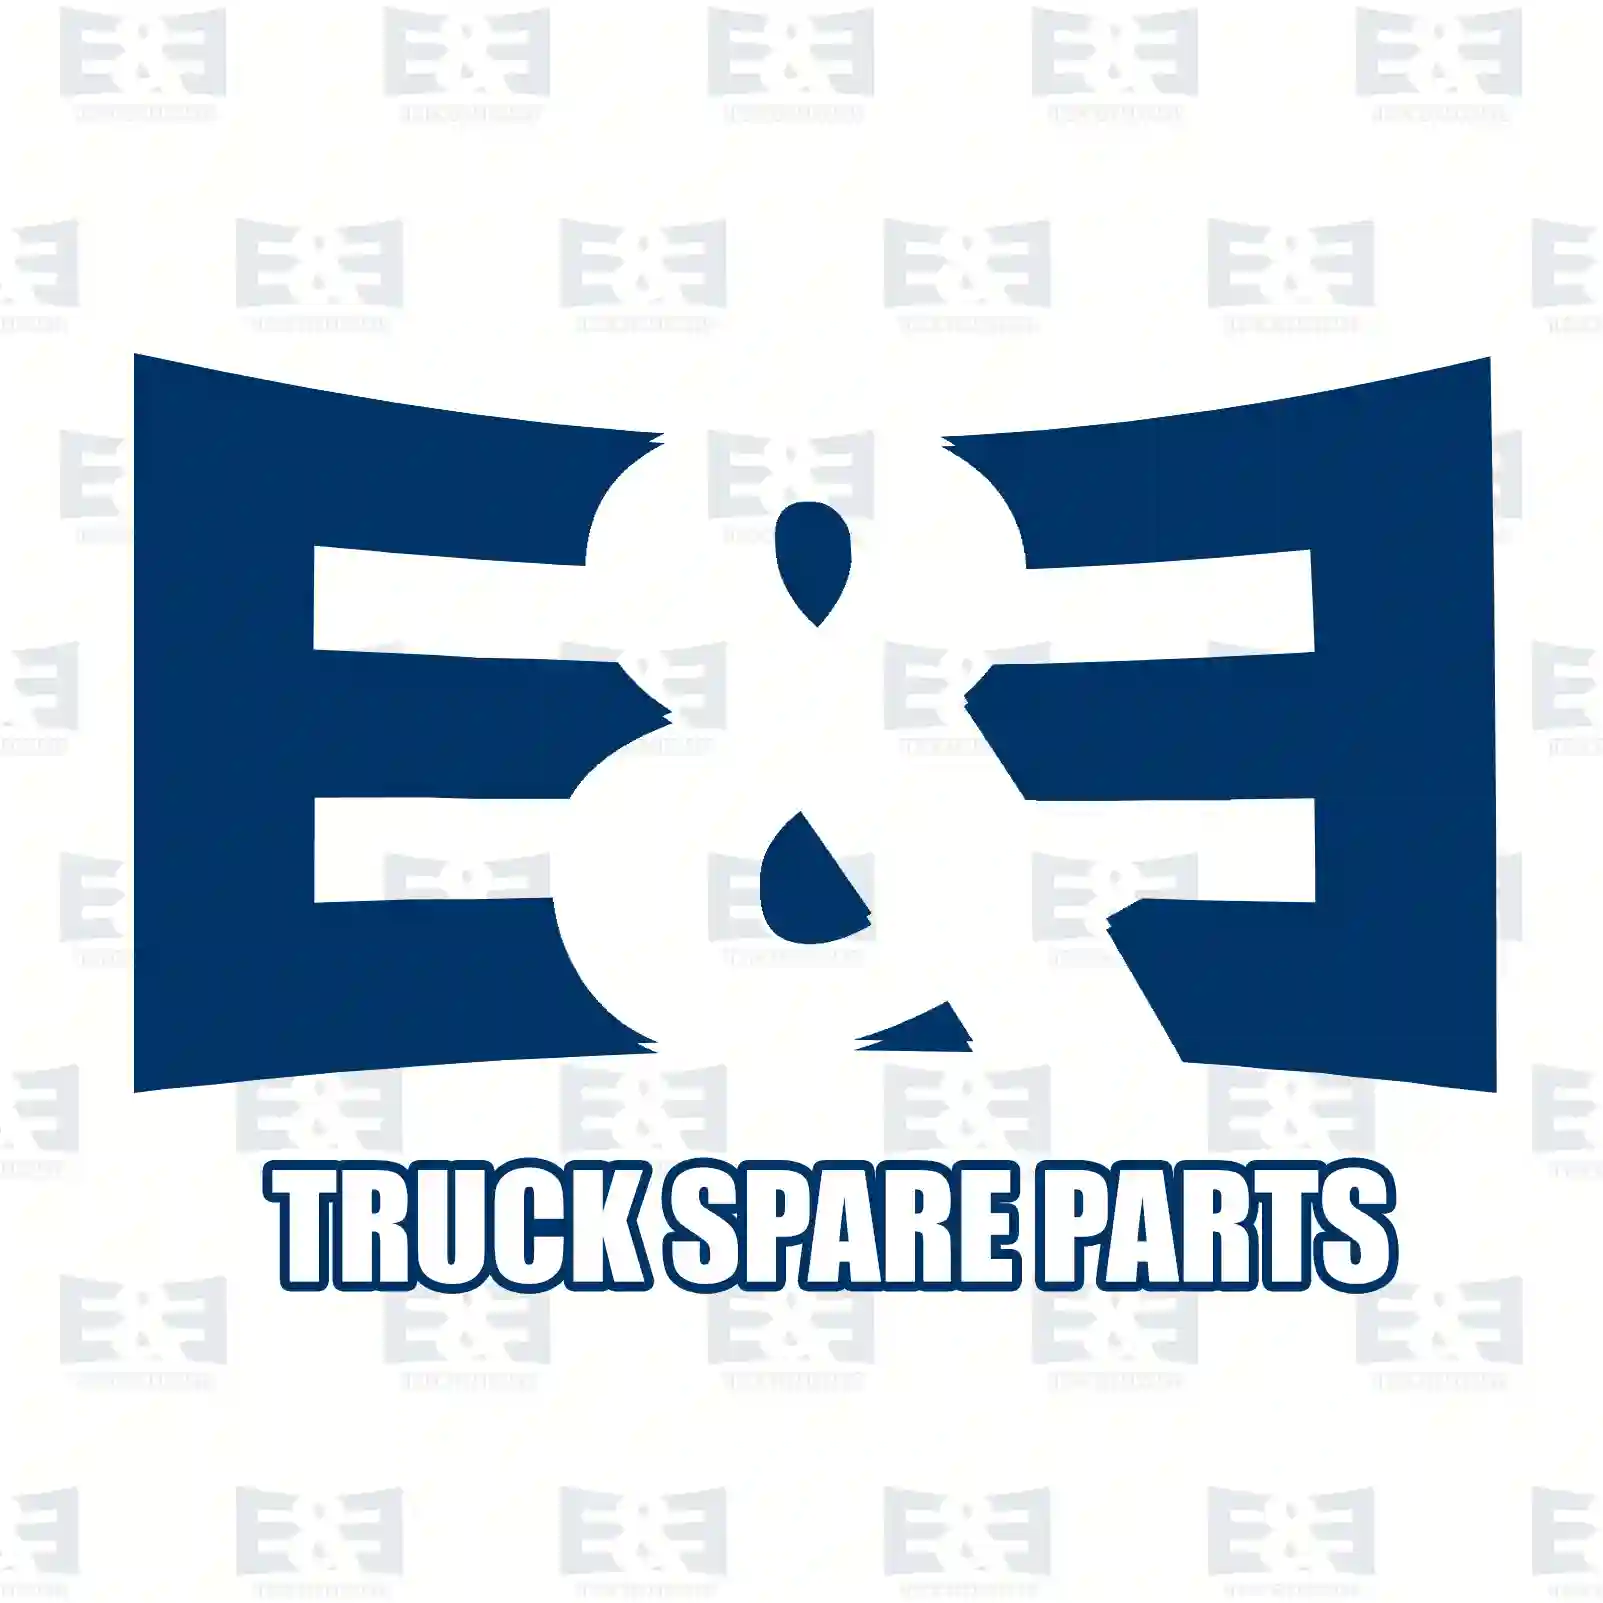 Propeller shaft, 2E2276882, 6564109602, 65641 ||  2E2276882 E&E Truck Spare Parts | Truck Spare Parts, Auotomotive Spare Parts Propeller shaft, 2E2276882, 6564109602, 65641 ||  2E2276882 E&E Truck Spare Parts | Truck Spare Parts, Auotomotive Spare Parts